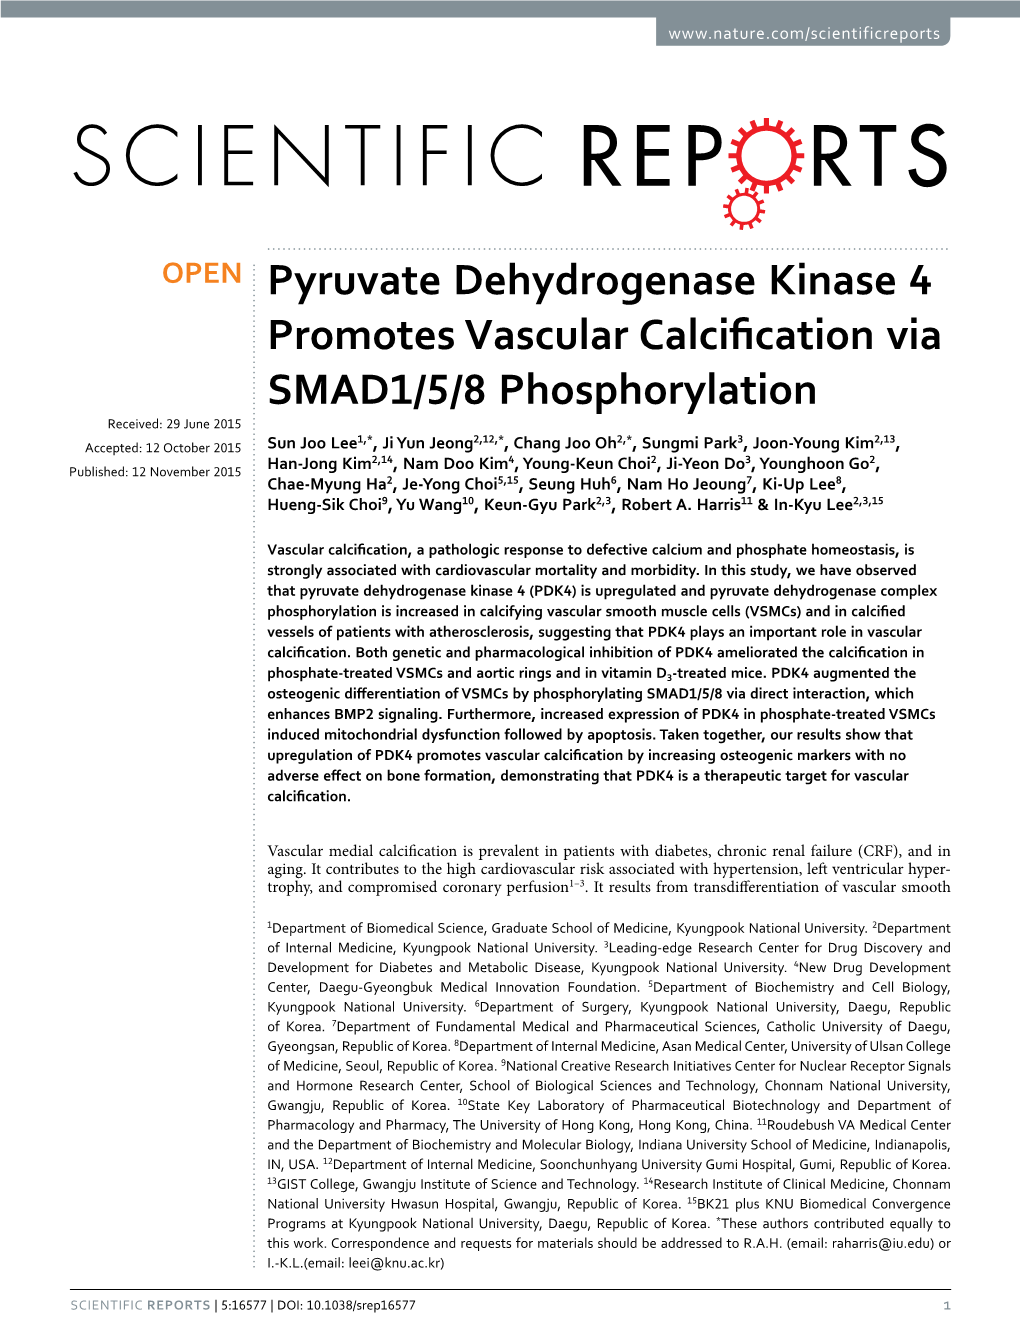 Pyruvate Dehydrogenase Kinase 4 Promotes Vascular Calcification Via